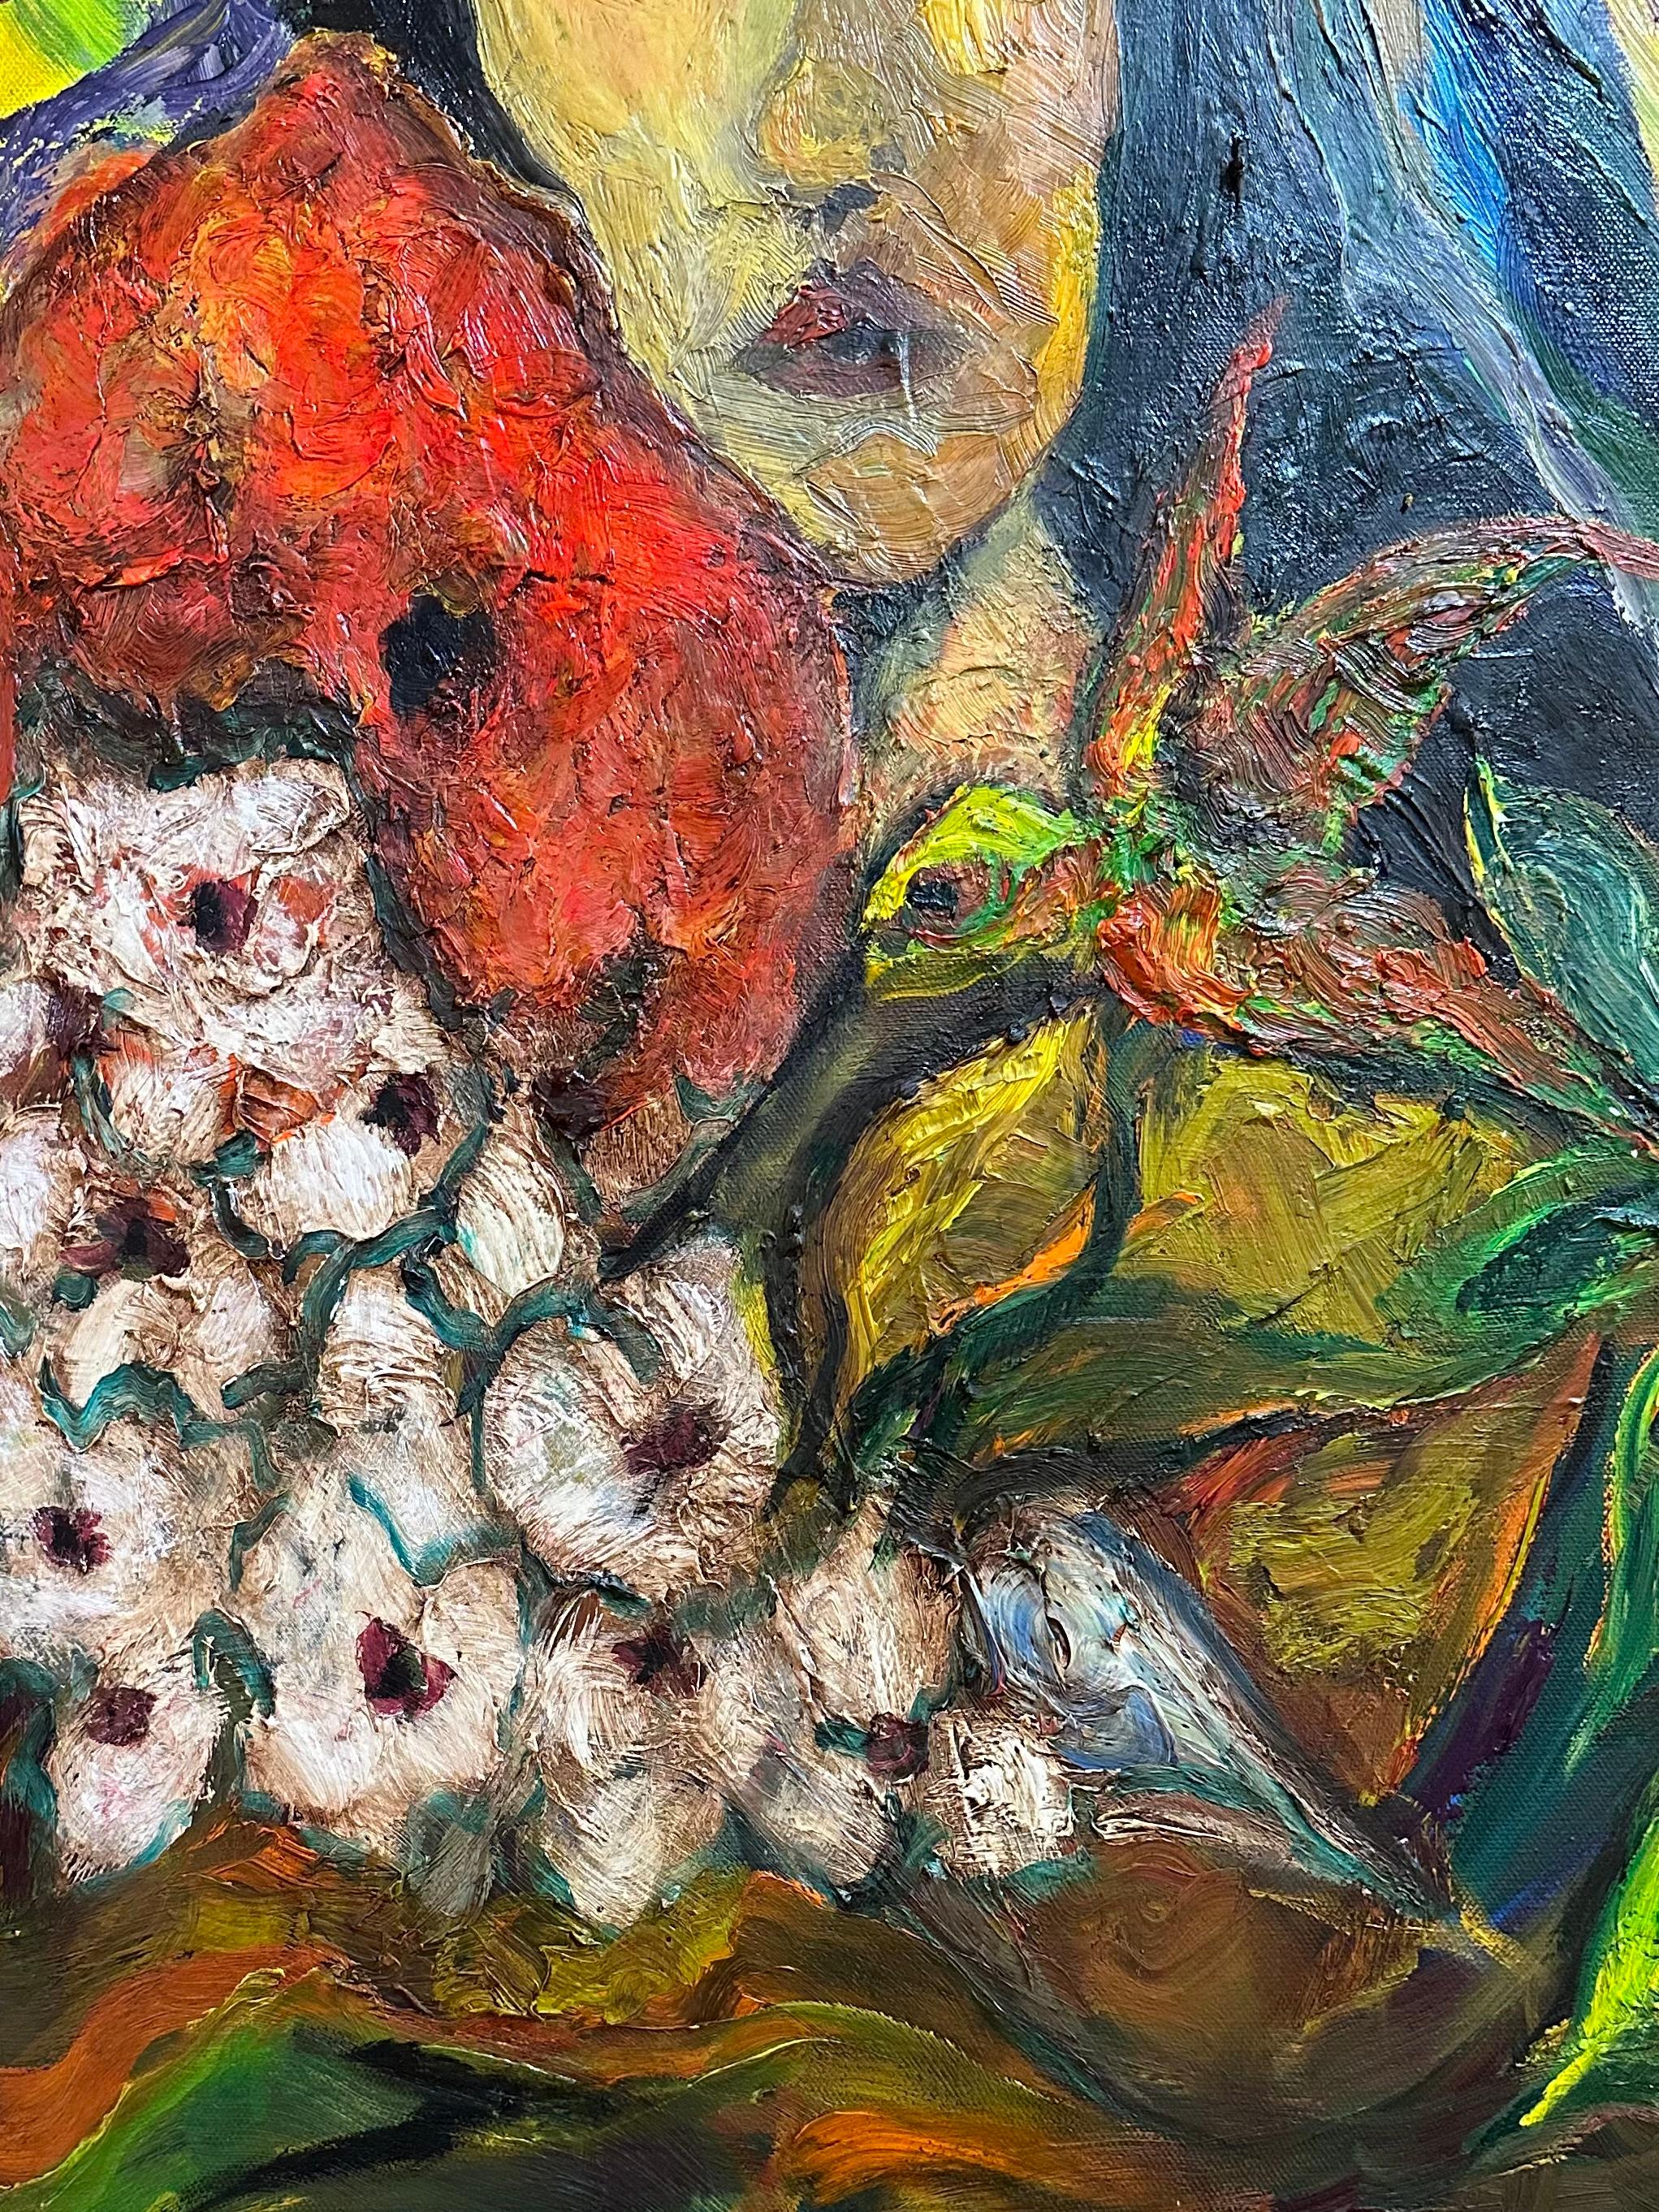 Schön in der Farbe, schwer in der Textur in Pinselstrich, gemalt von Künstler John Nys geboren in 1952, in Sacramento, Kalifornien.  Sein Vater war im Auswärtigen Dienst tätig, im Nahen Osten und in Europa.  Auf Reisen mit seiner Familie durch